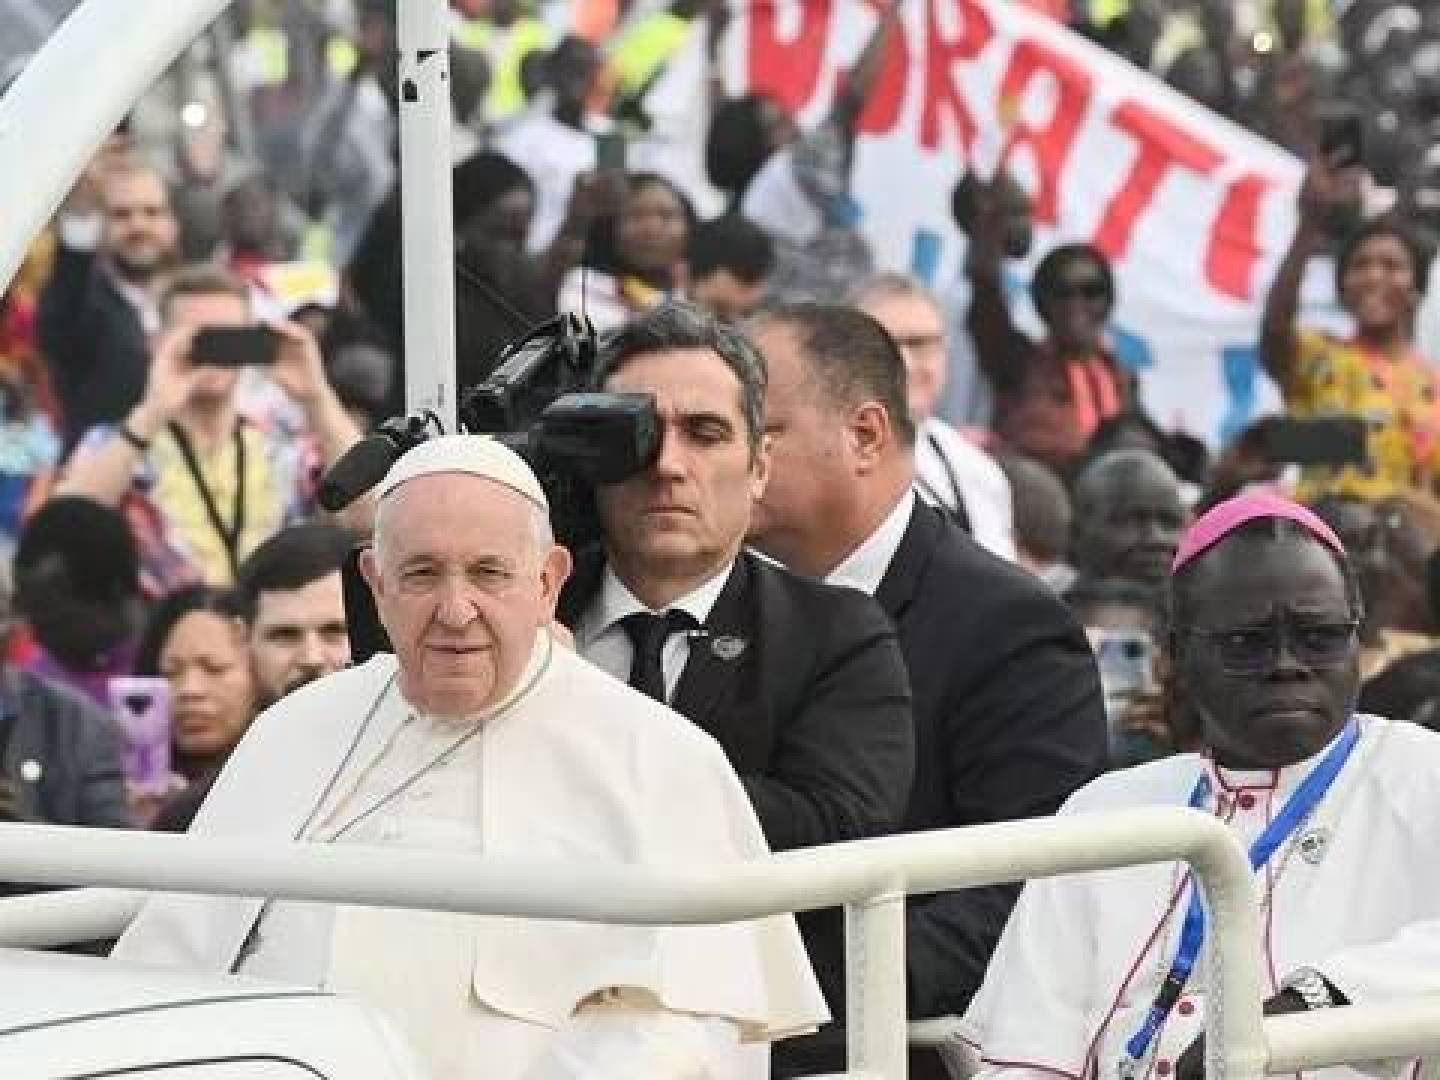 رسميا وشرعيا : بابا الفاتيكان يحلل زواج المثليين